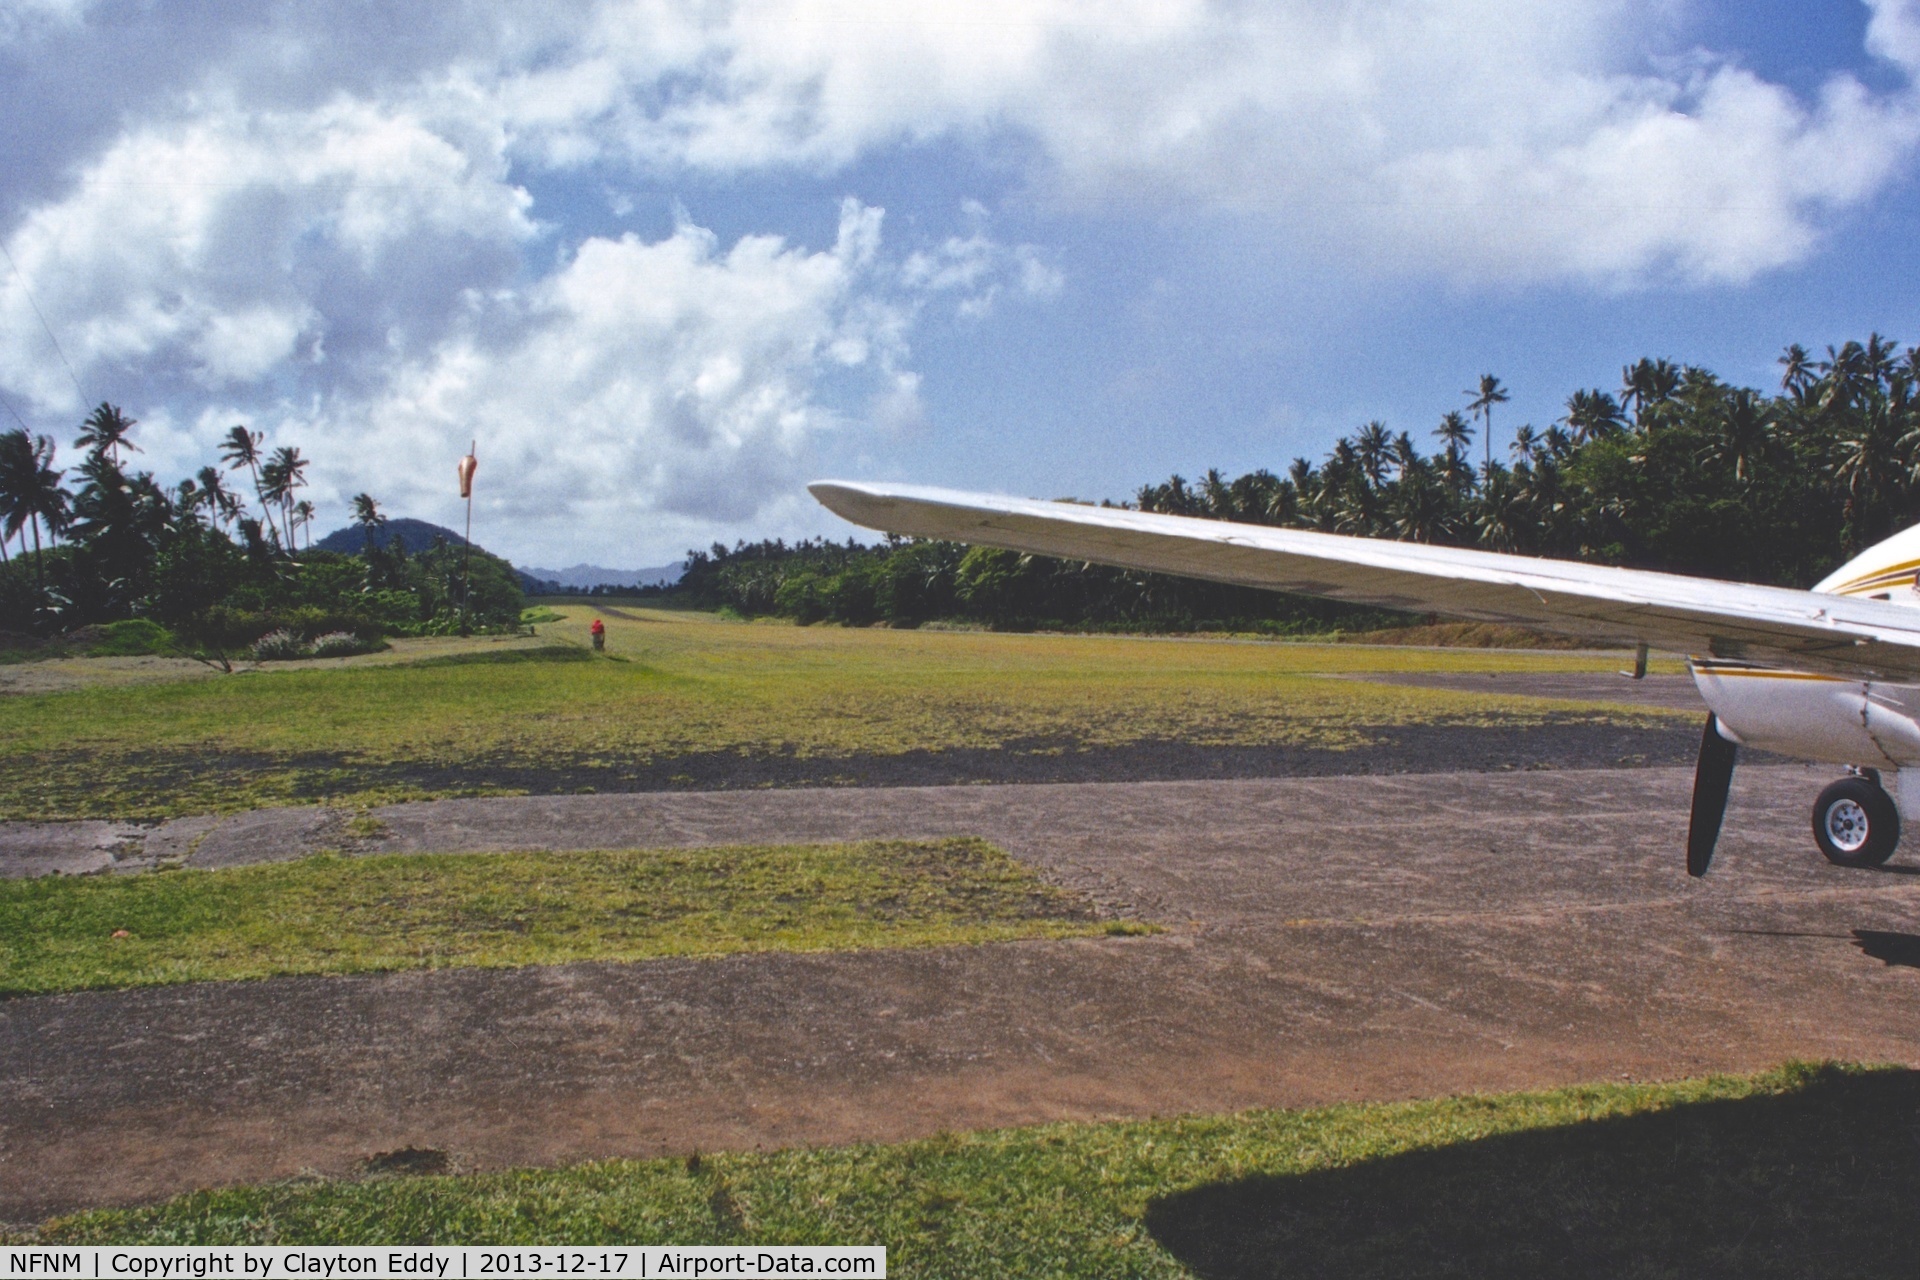 Taveuni Island Airport, Matei, Taveuni Fiji (NFNM) - 1999